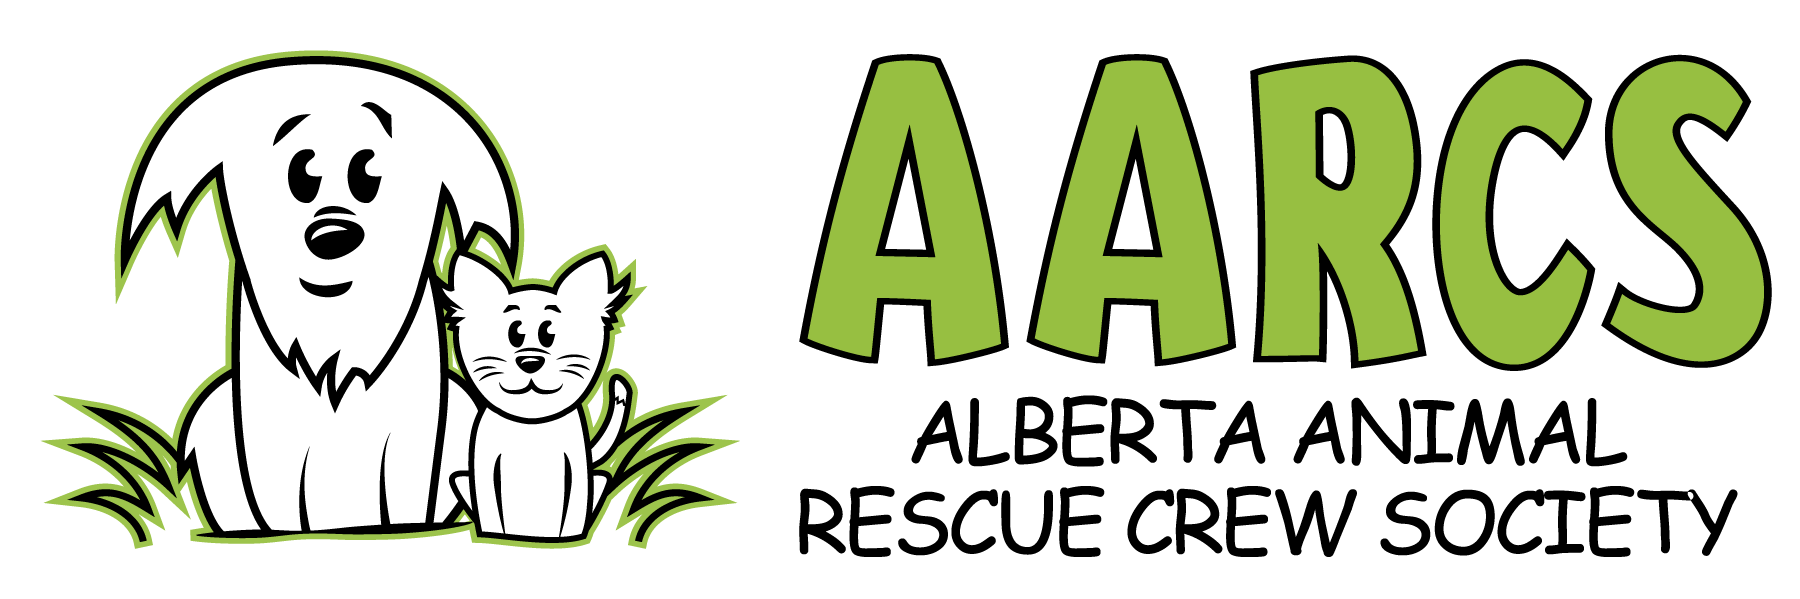 AARCS_logo2015.png